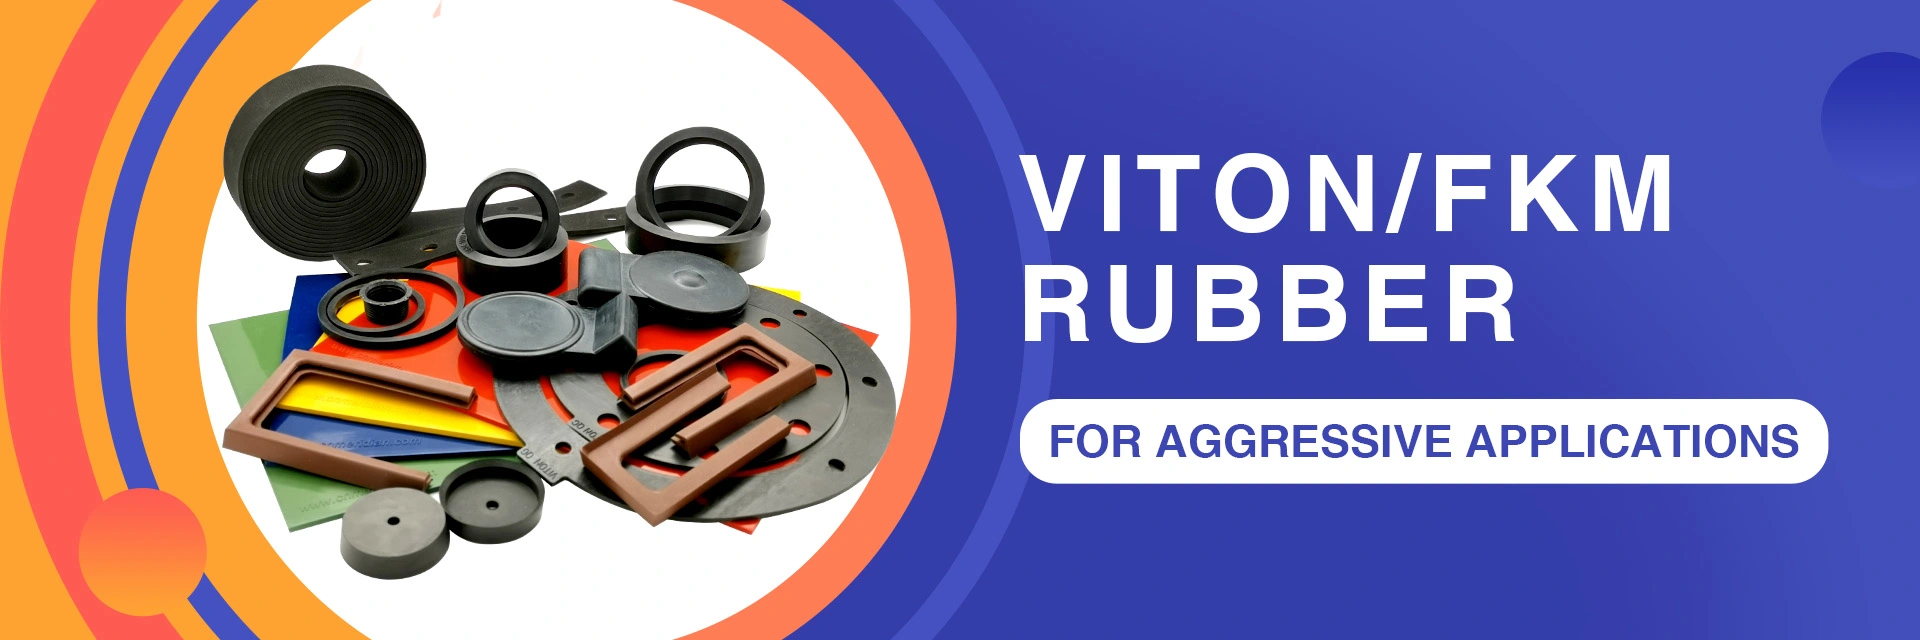 Viton/FKM Rubber for aggressive applications